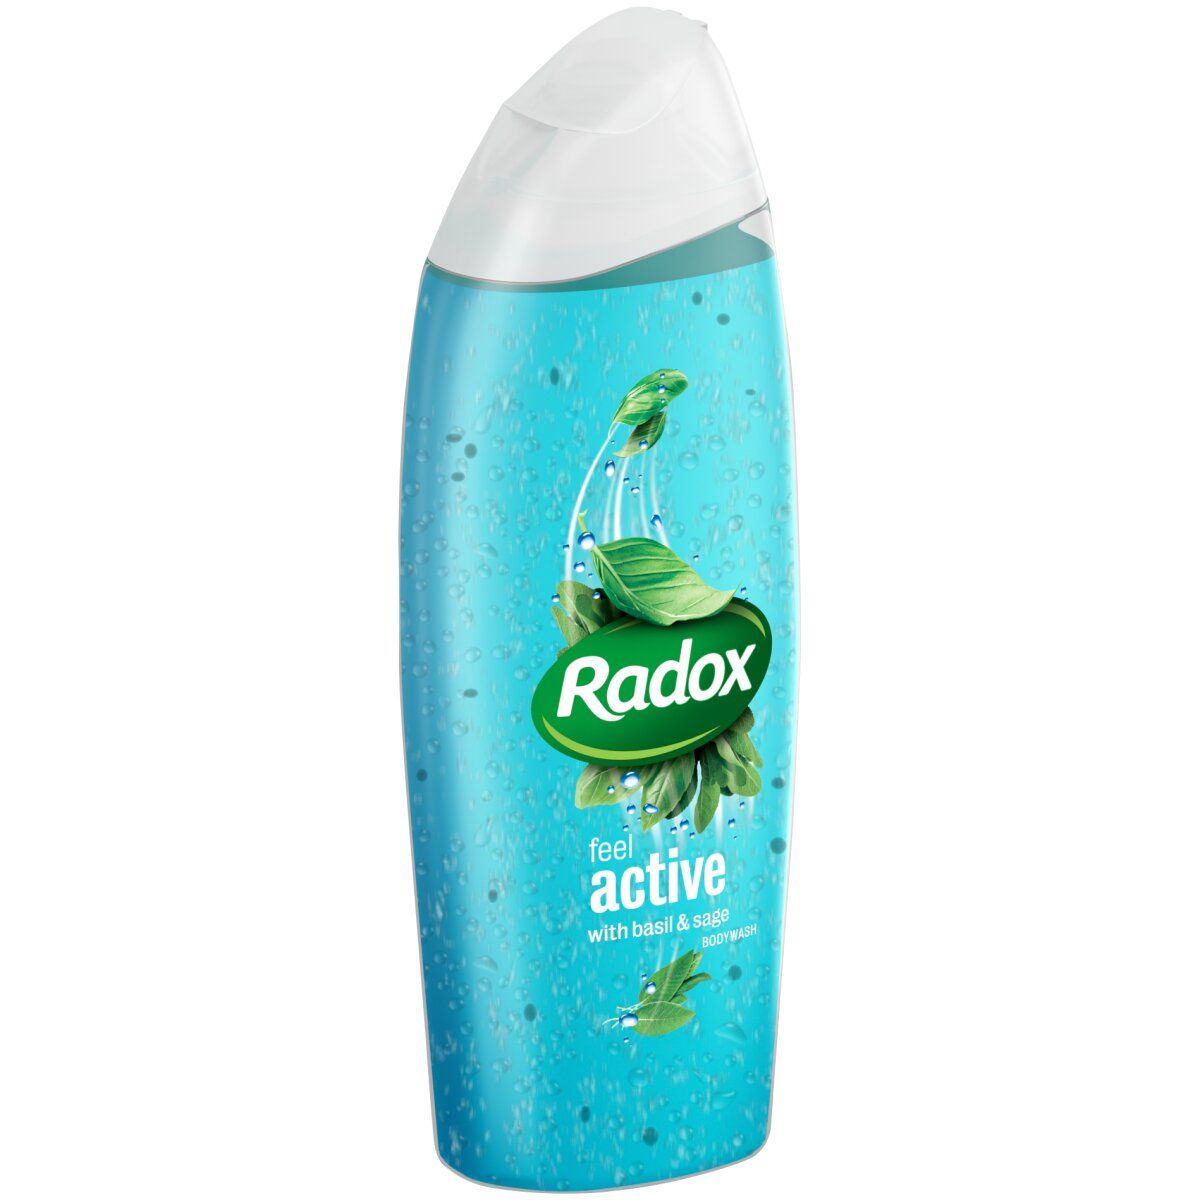 Radox Body Wash 400ml